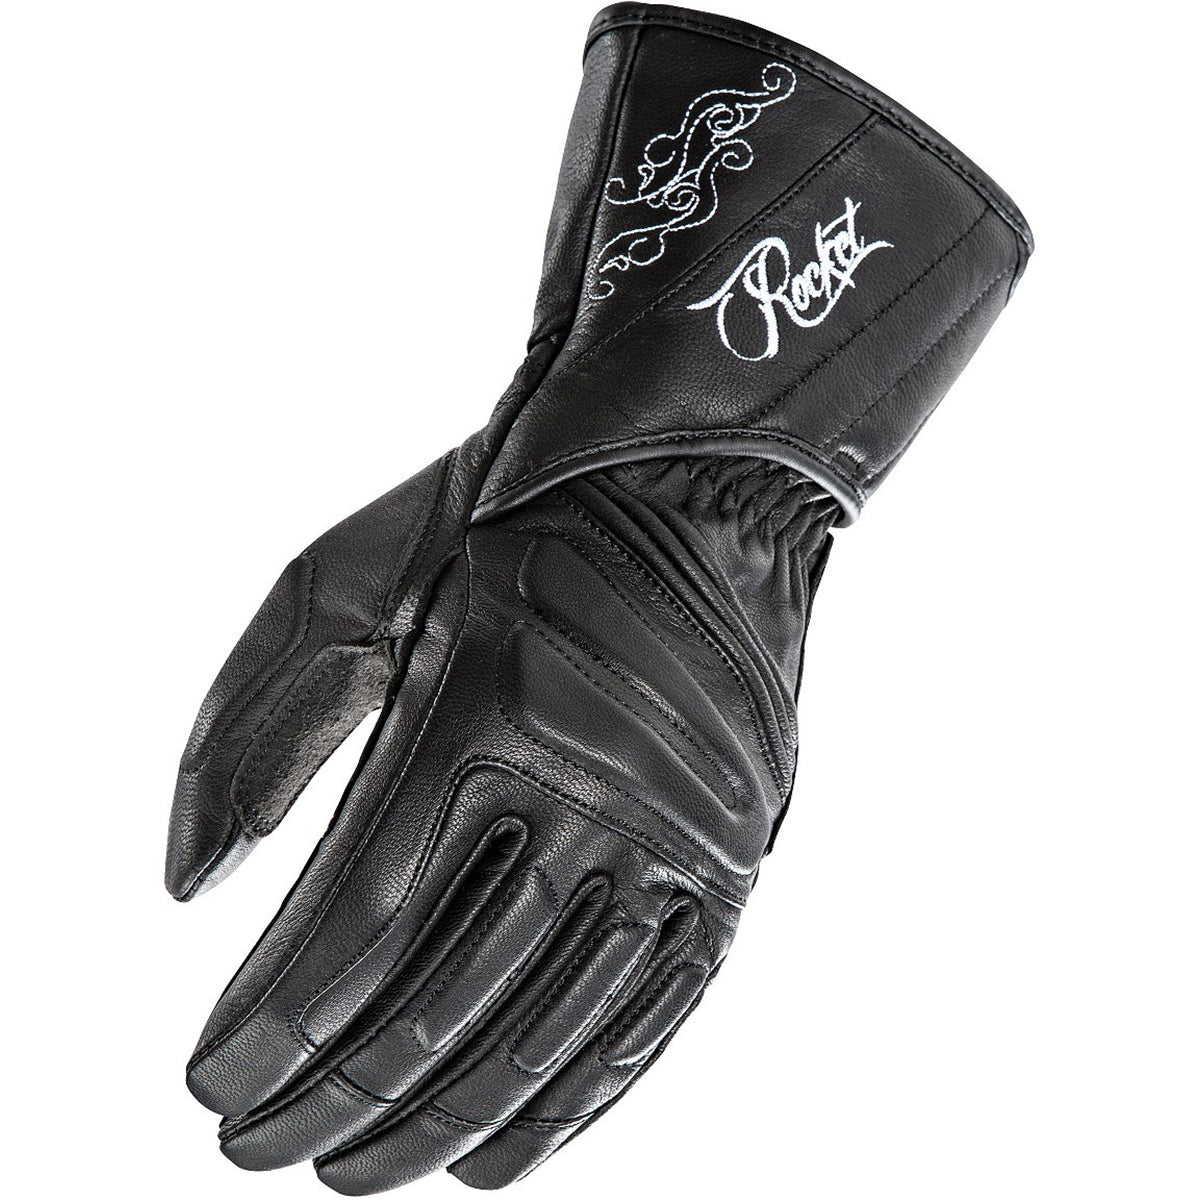 Joe Rocket Pro Street Leather Women's Street Gloves Brand New-1638